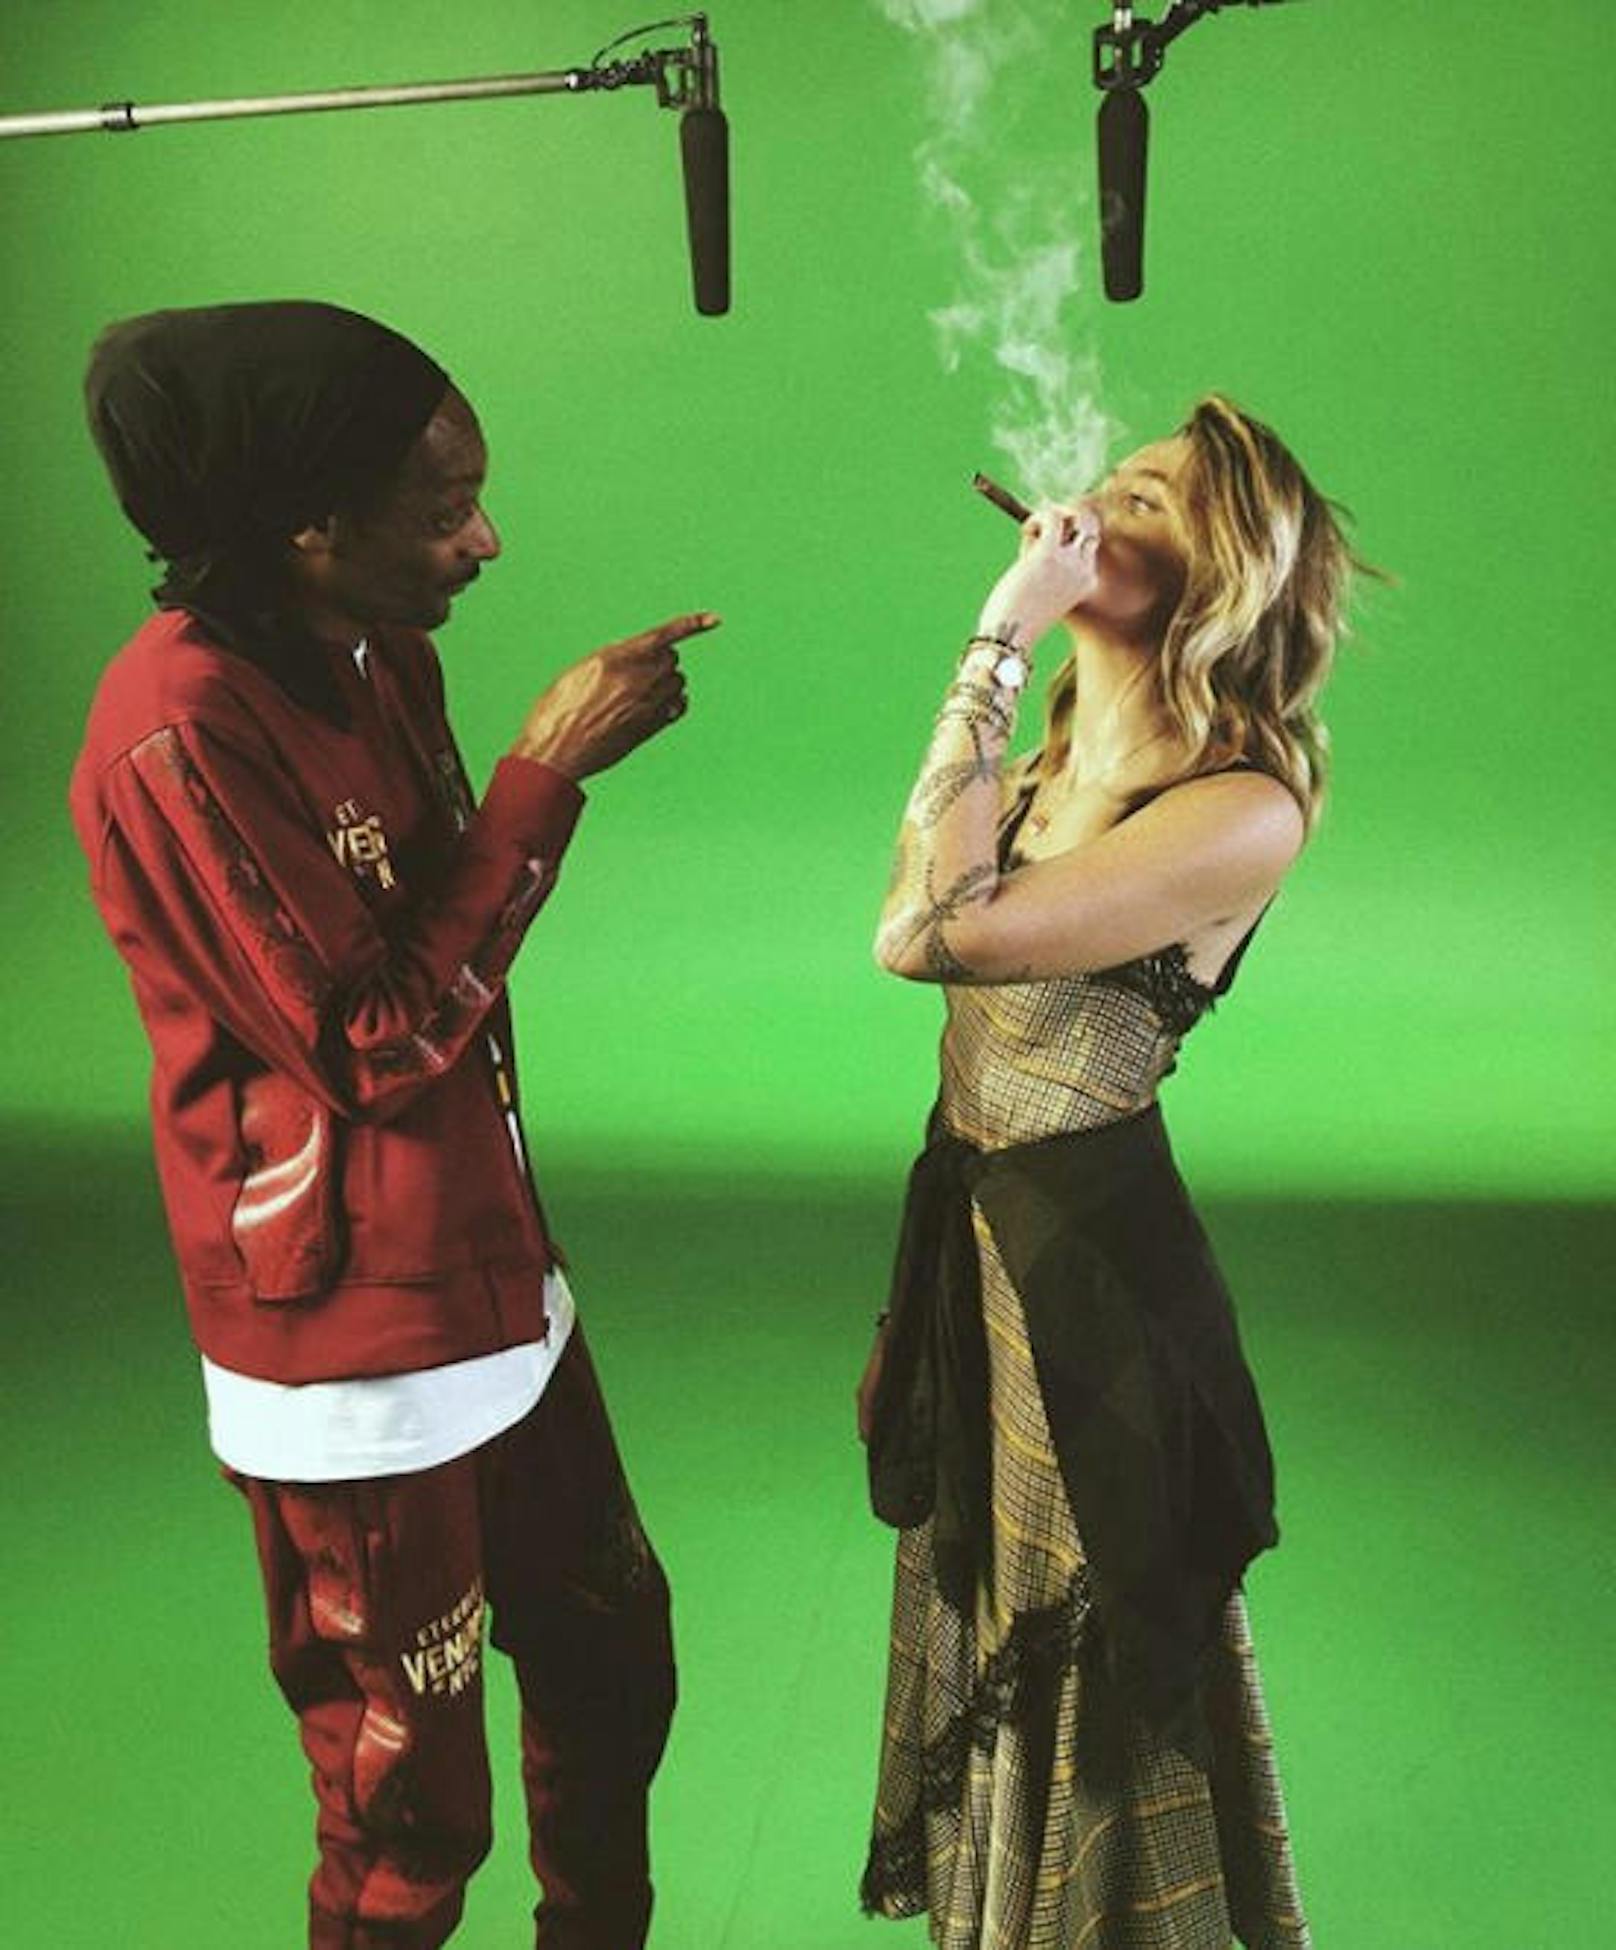 23.02.2018: Der kleinste gemeinsame Nenner zwischen Paris Jackson und Snoop Dogg ist ein riesengroßer Joint. "Green on Green" nannte Paris das Bild als sie es auf Instagram postete. 